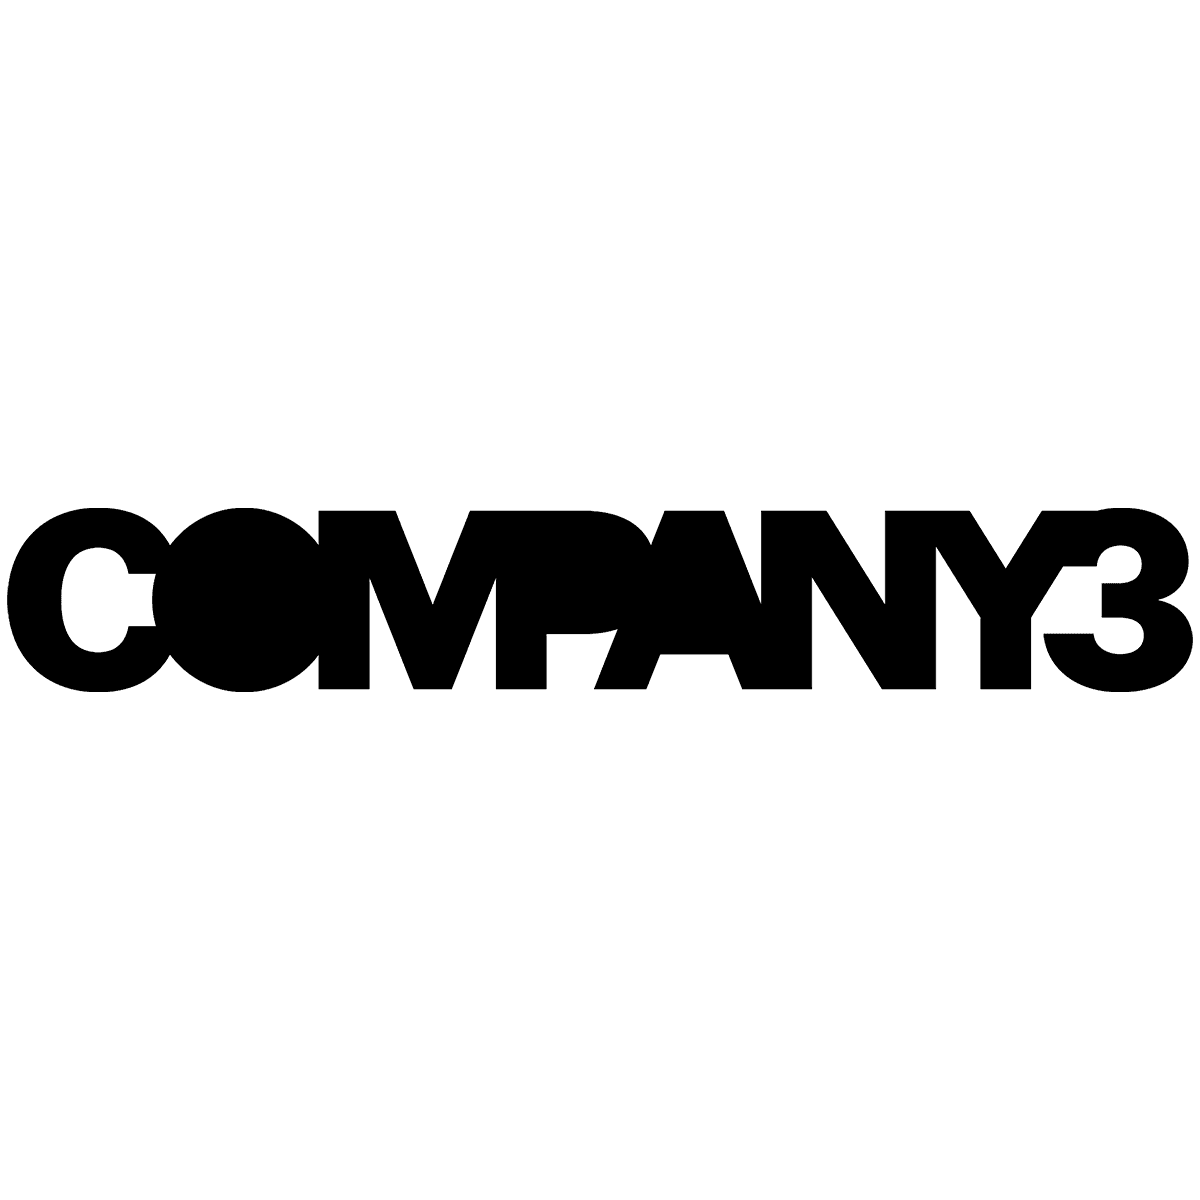 Company 3 logo